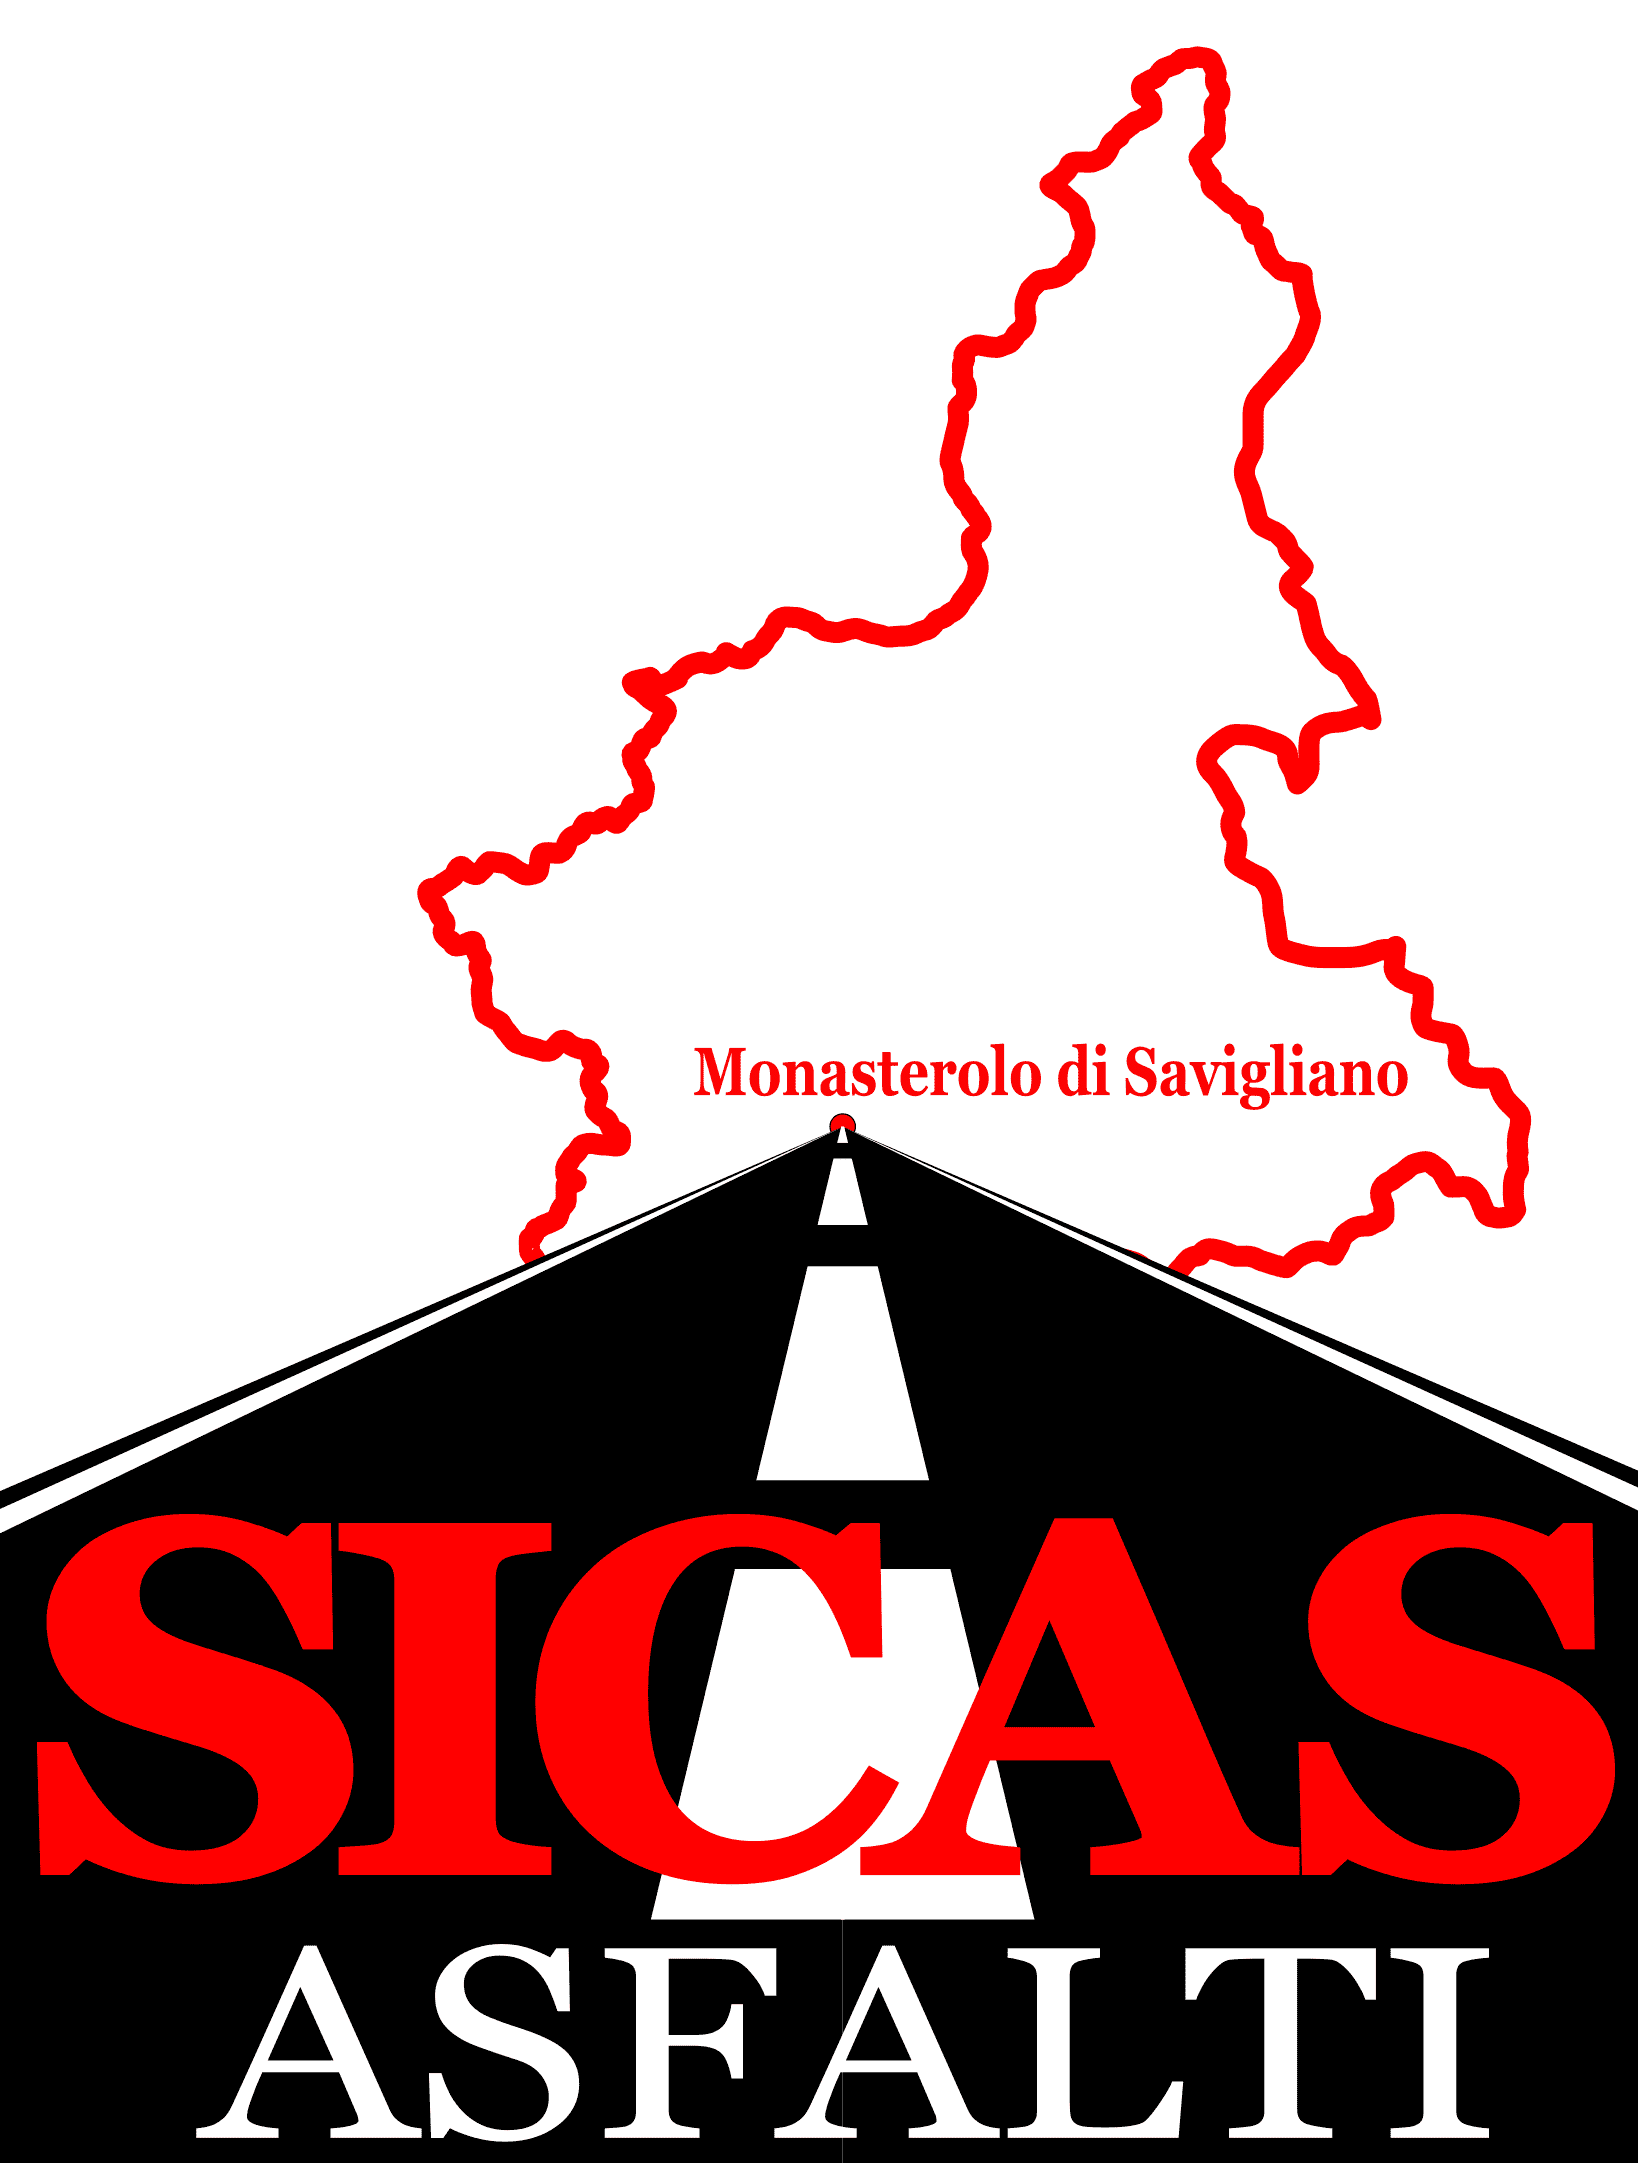 logo SICAS ASFALTI